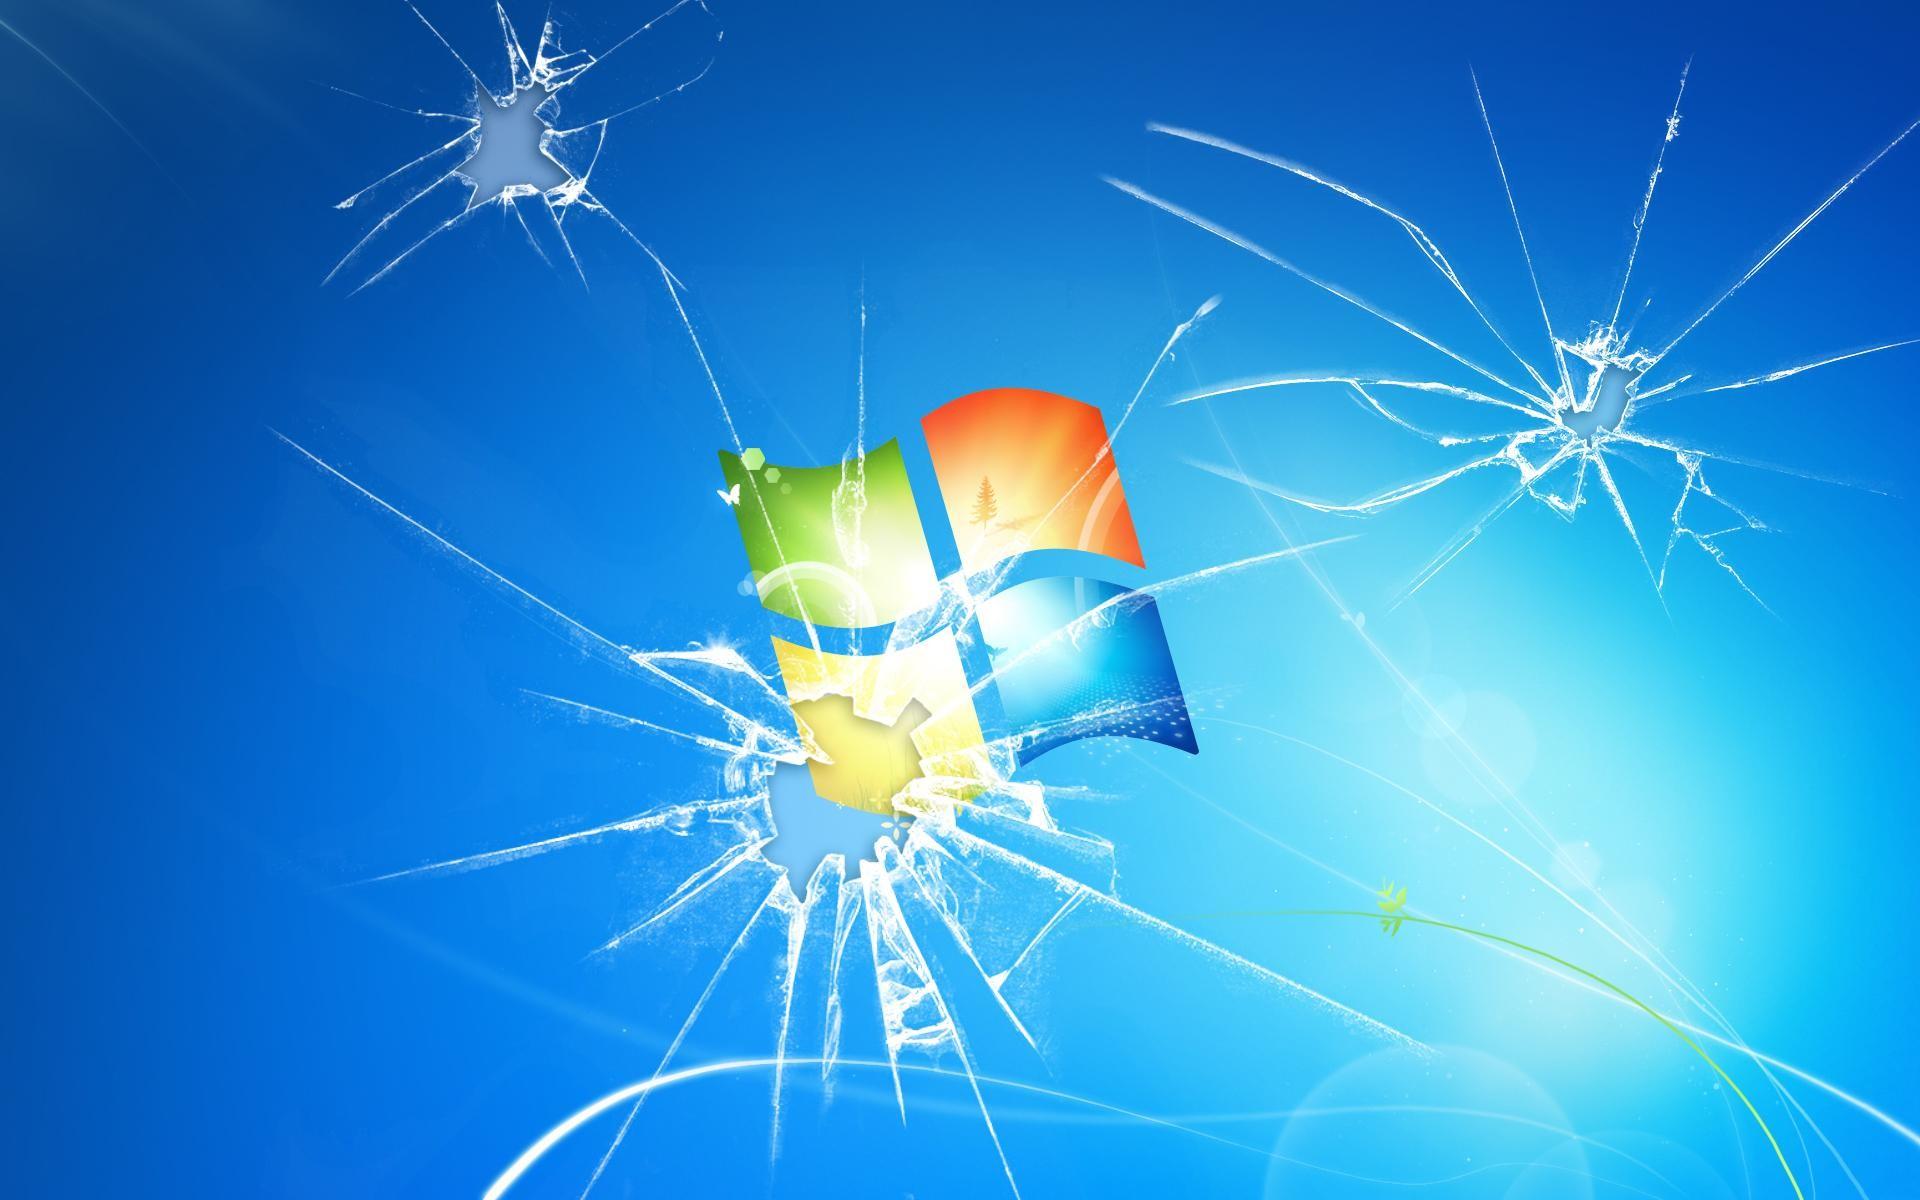 Windows 10 Wallpaper Broken, mywallpapers site